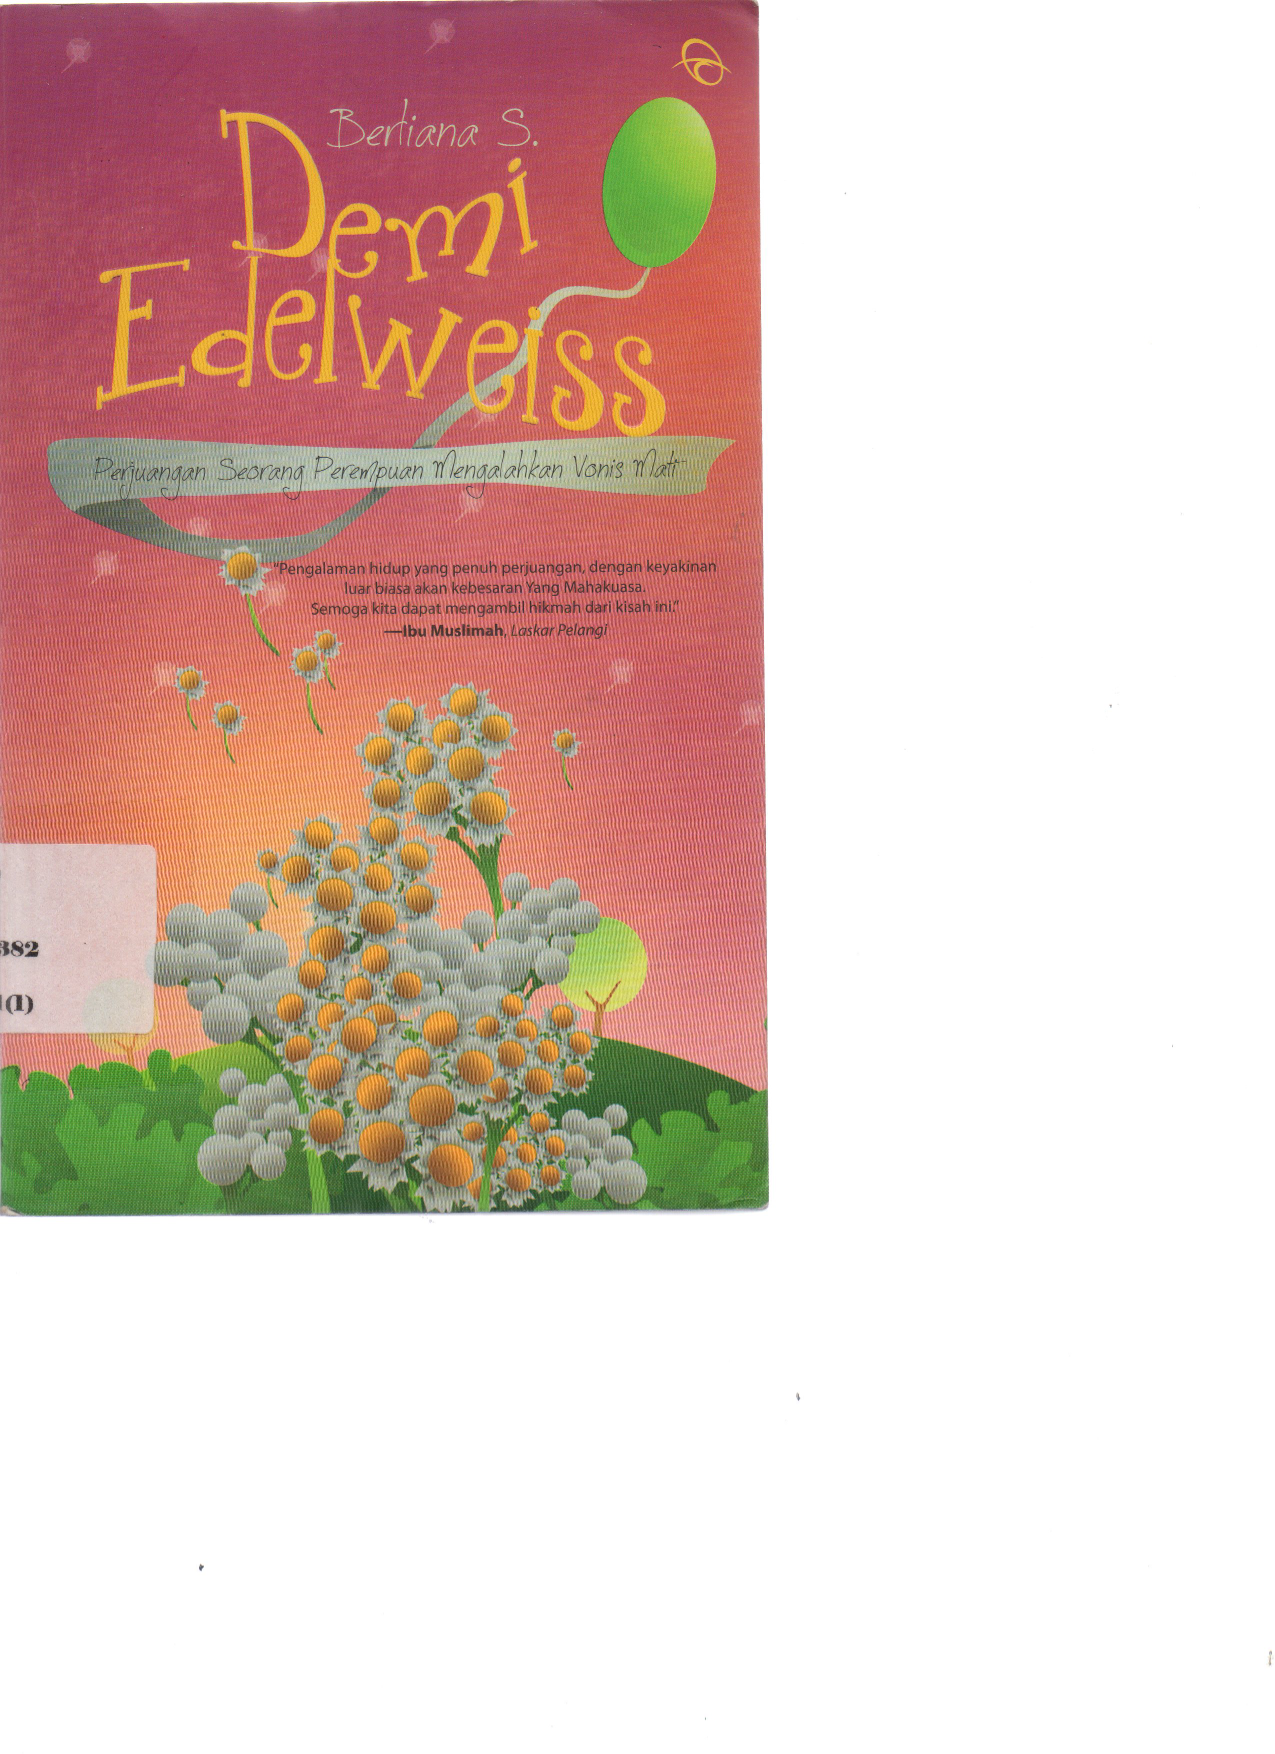 Demi Edelweiss: Perjuangan Seorang Perempuan Mengalahkan Vonis Mati